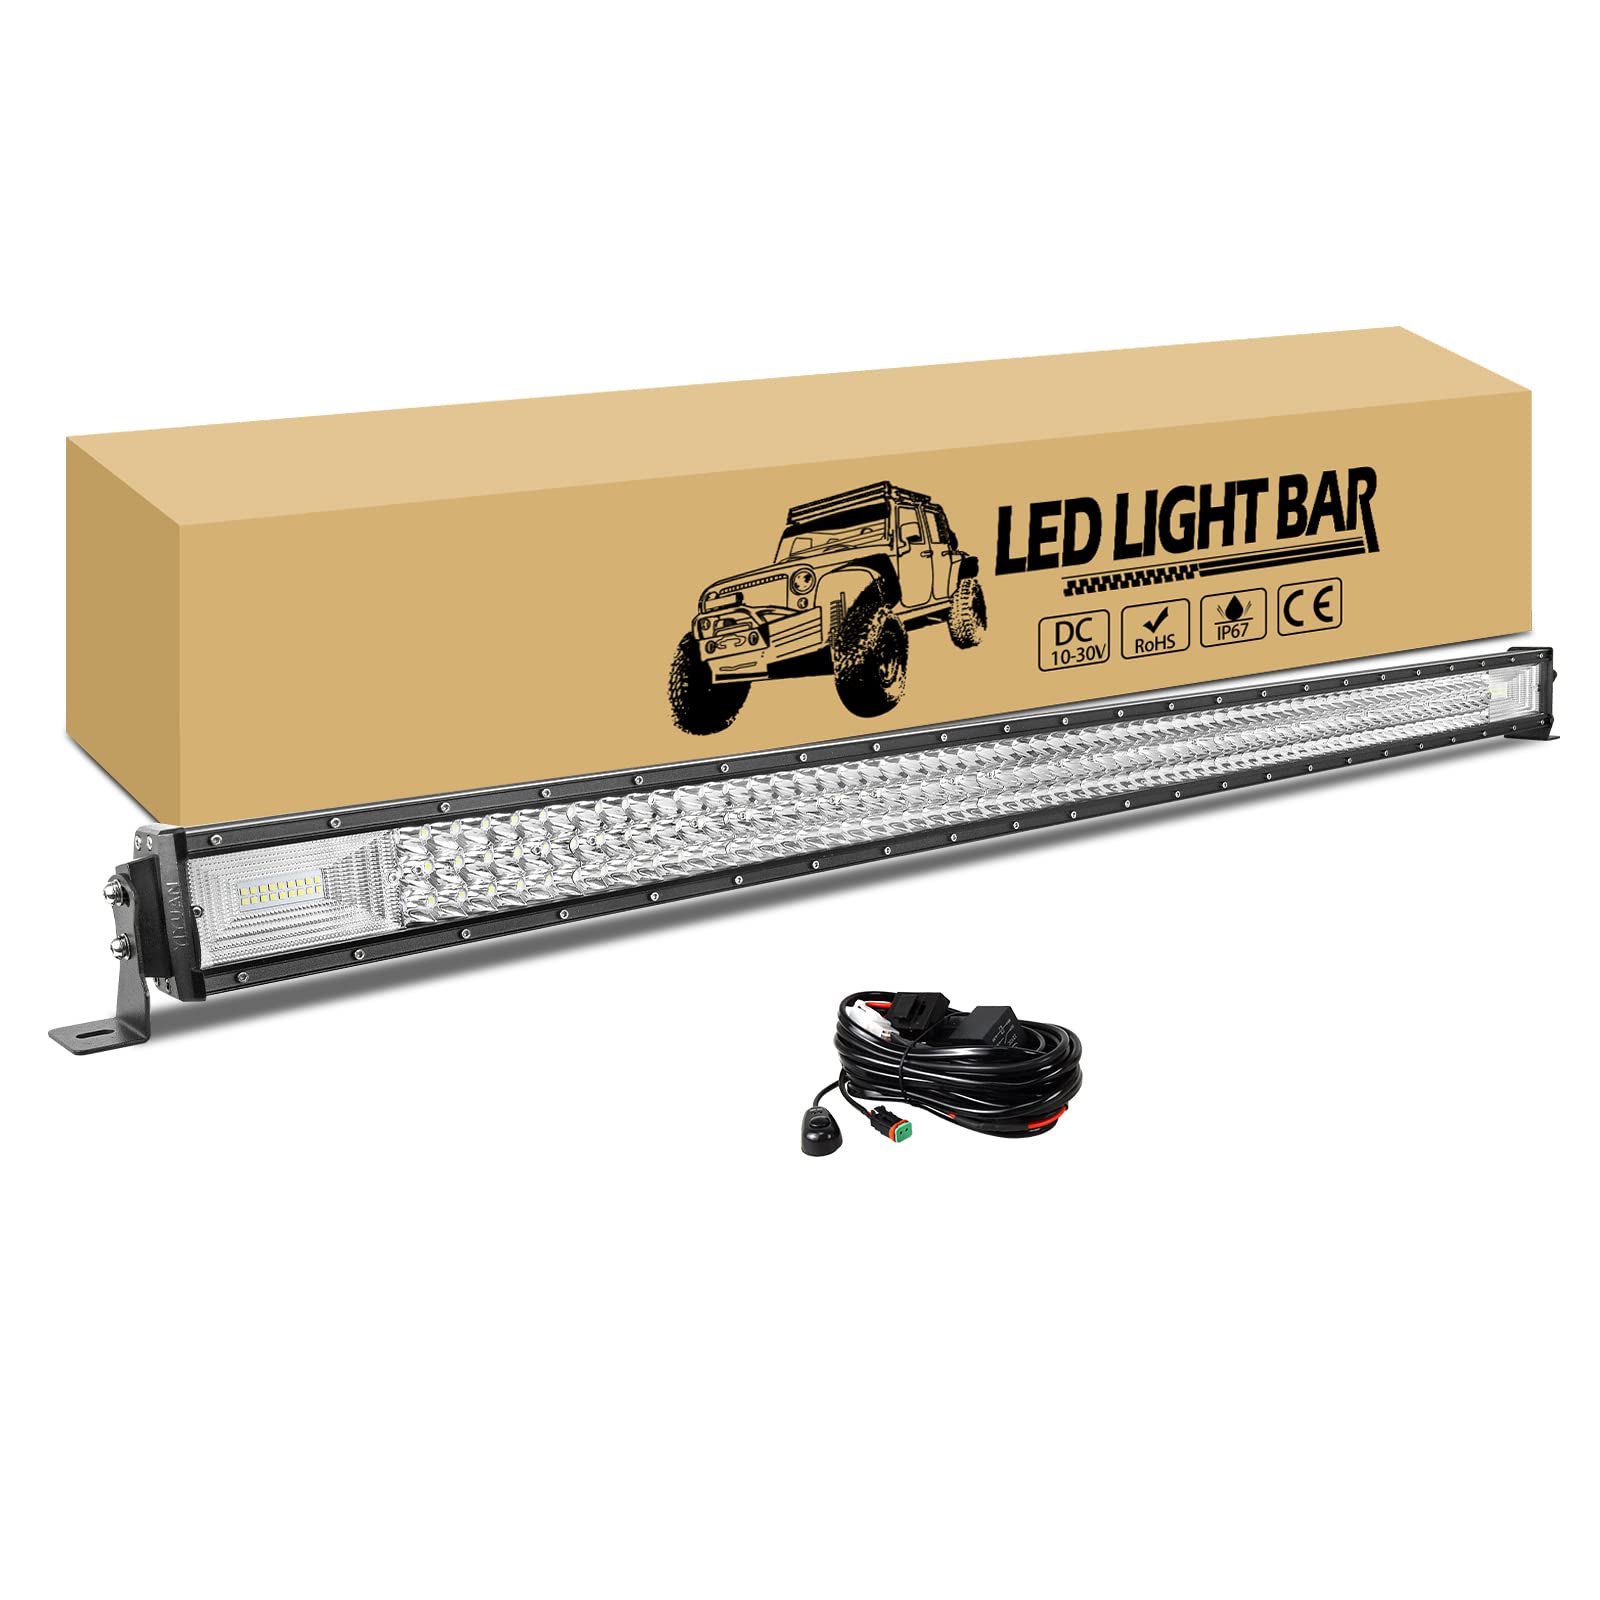 RIGIDON 130cm 675W LED Arbeitsscheinwerfer Bar mit 12v kabelbaum kit, 2 DT Stecker, Wasserdicht led lichtleiste kfz, Offroad Beleuchtung für Auto SUV ATV UTV LKW 4x4 Nebelscheinwerfer von RIGIDON